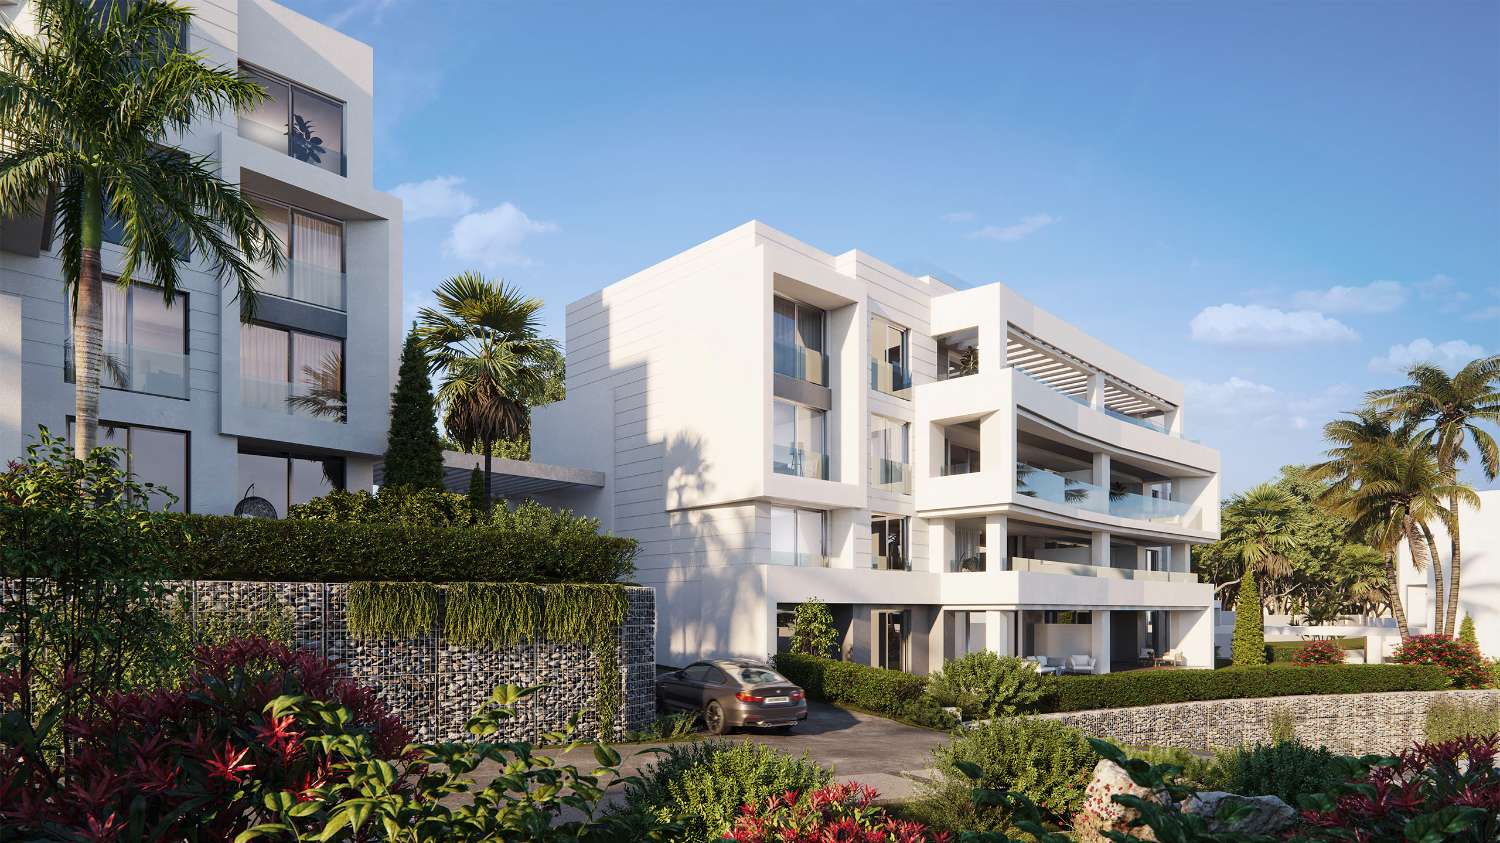 Spacieux et exclusif appartement de quatre chambres avec jardin privé de 221 m2 dans Resort à Marbella, sur la première ligne du terrain de golf